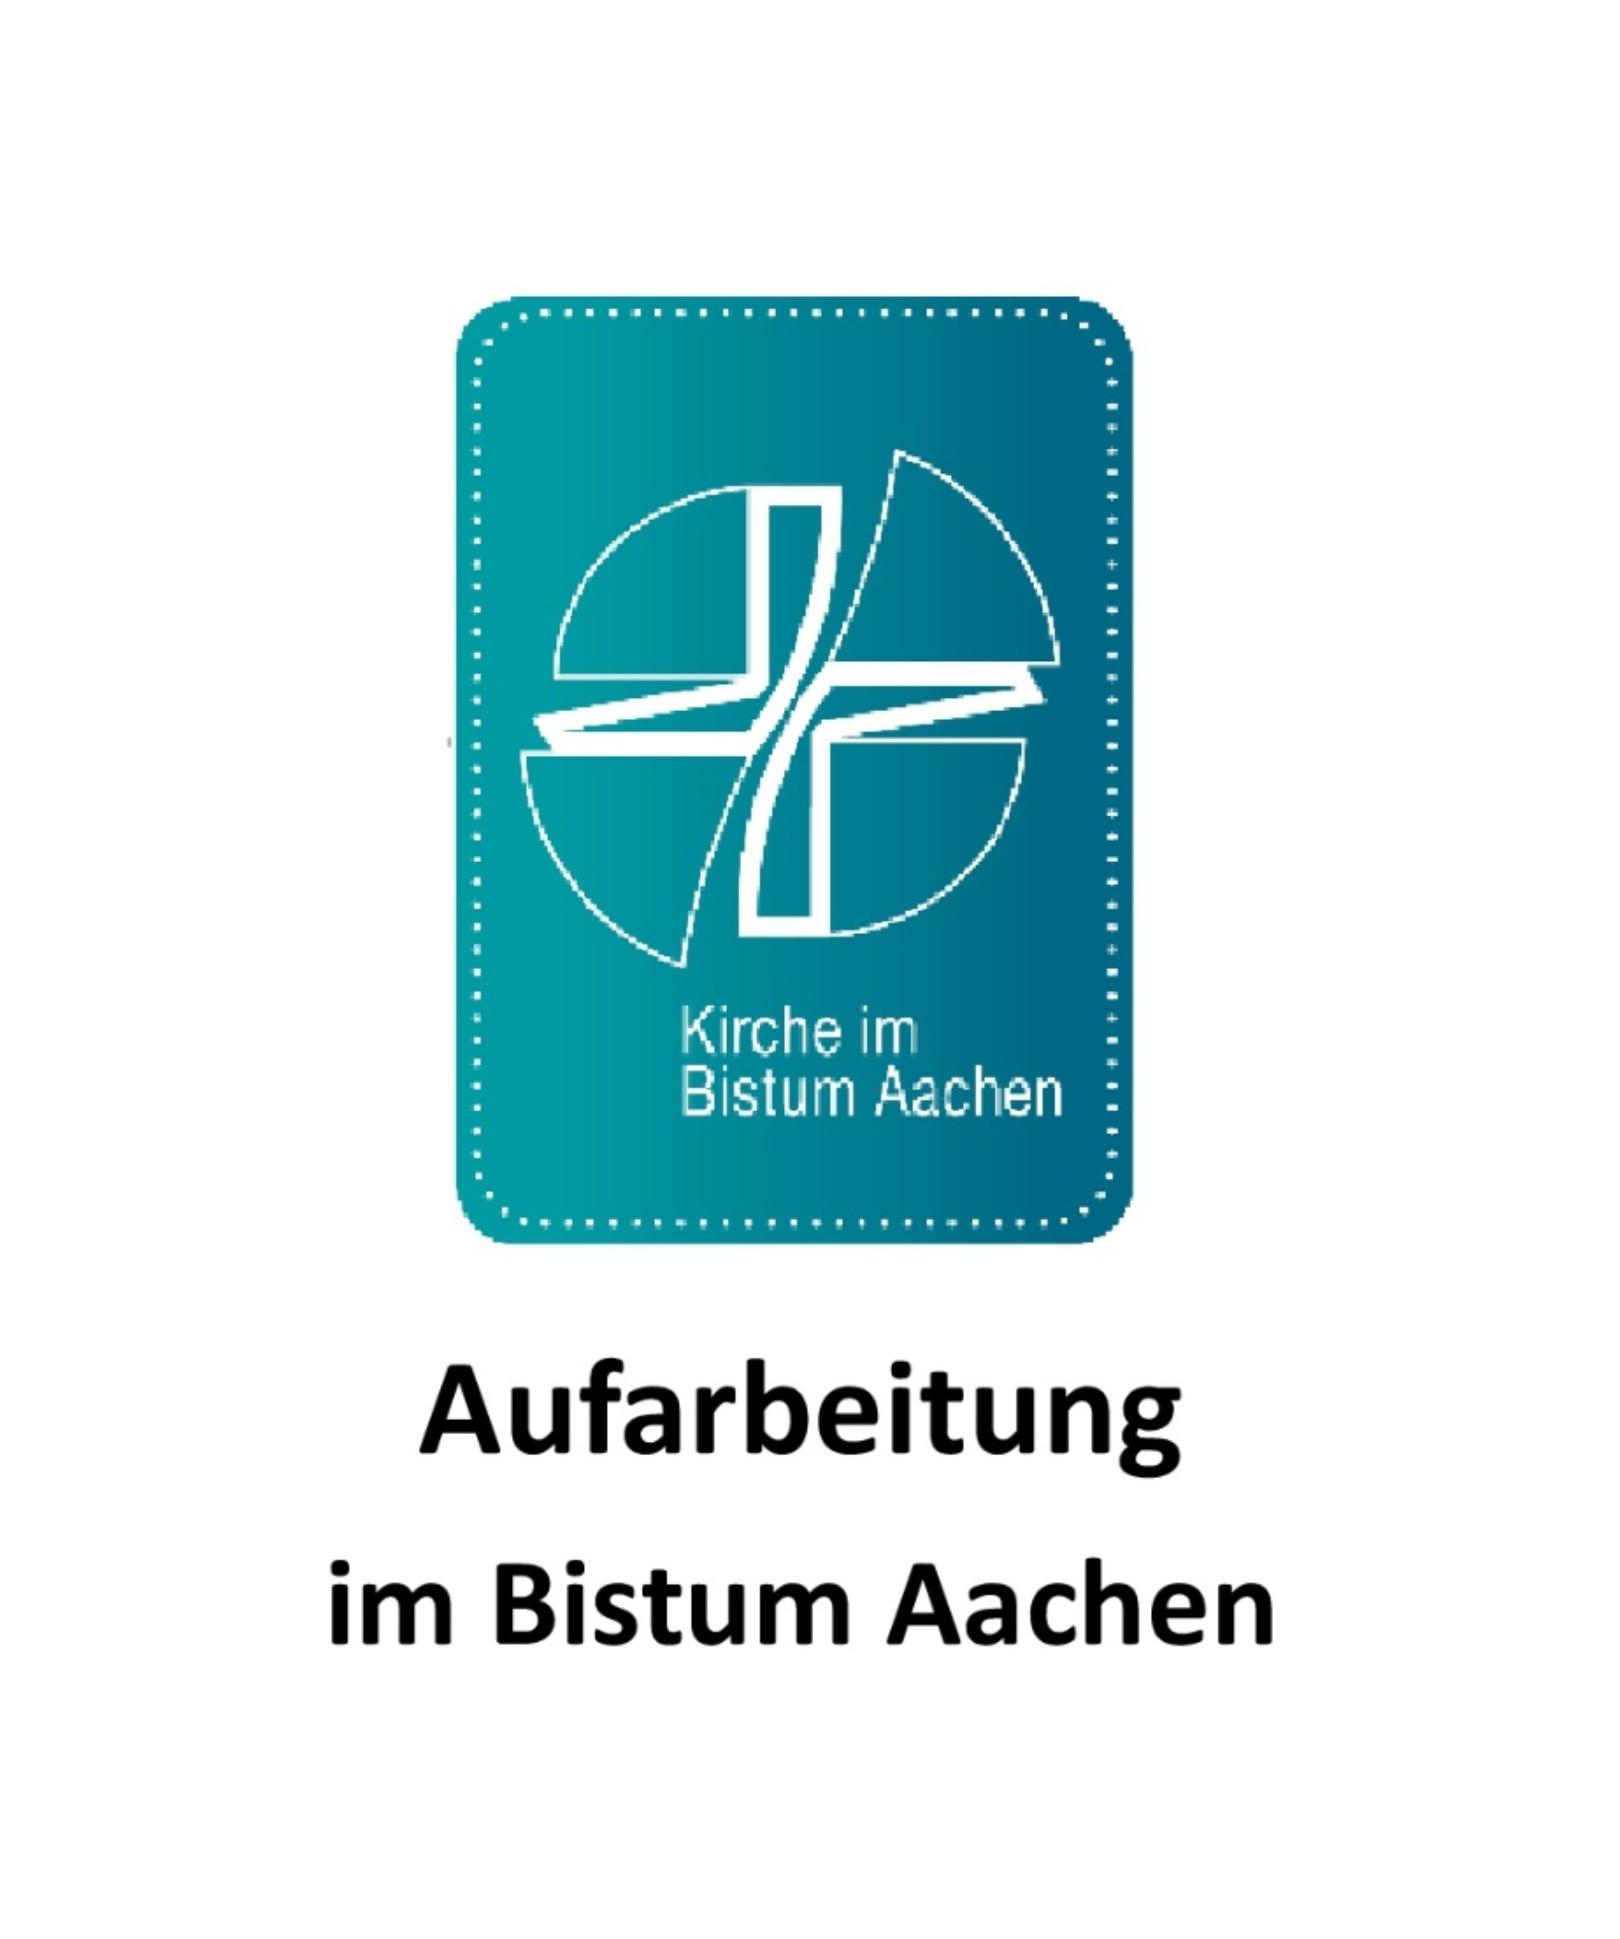 Aufarbeitung Bistum Aachen_ (c) Logo: Bischöfliches Generalvikariat Aachen